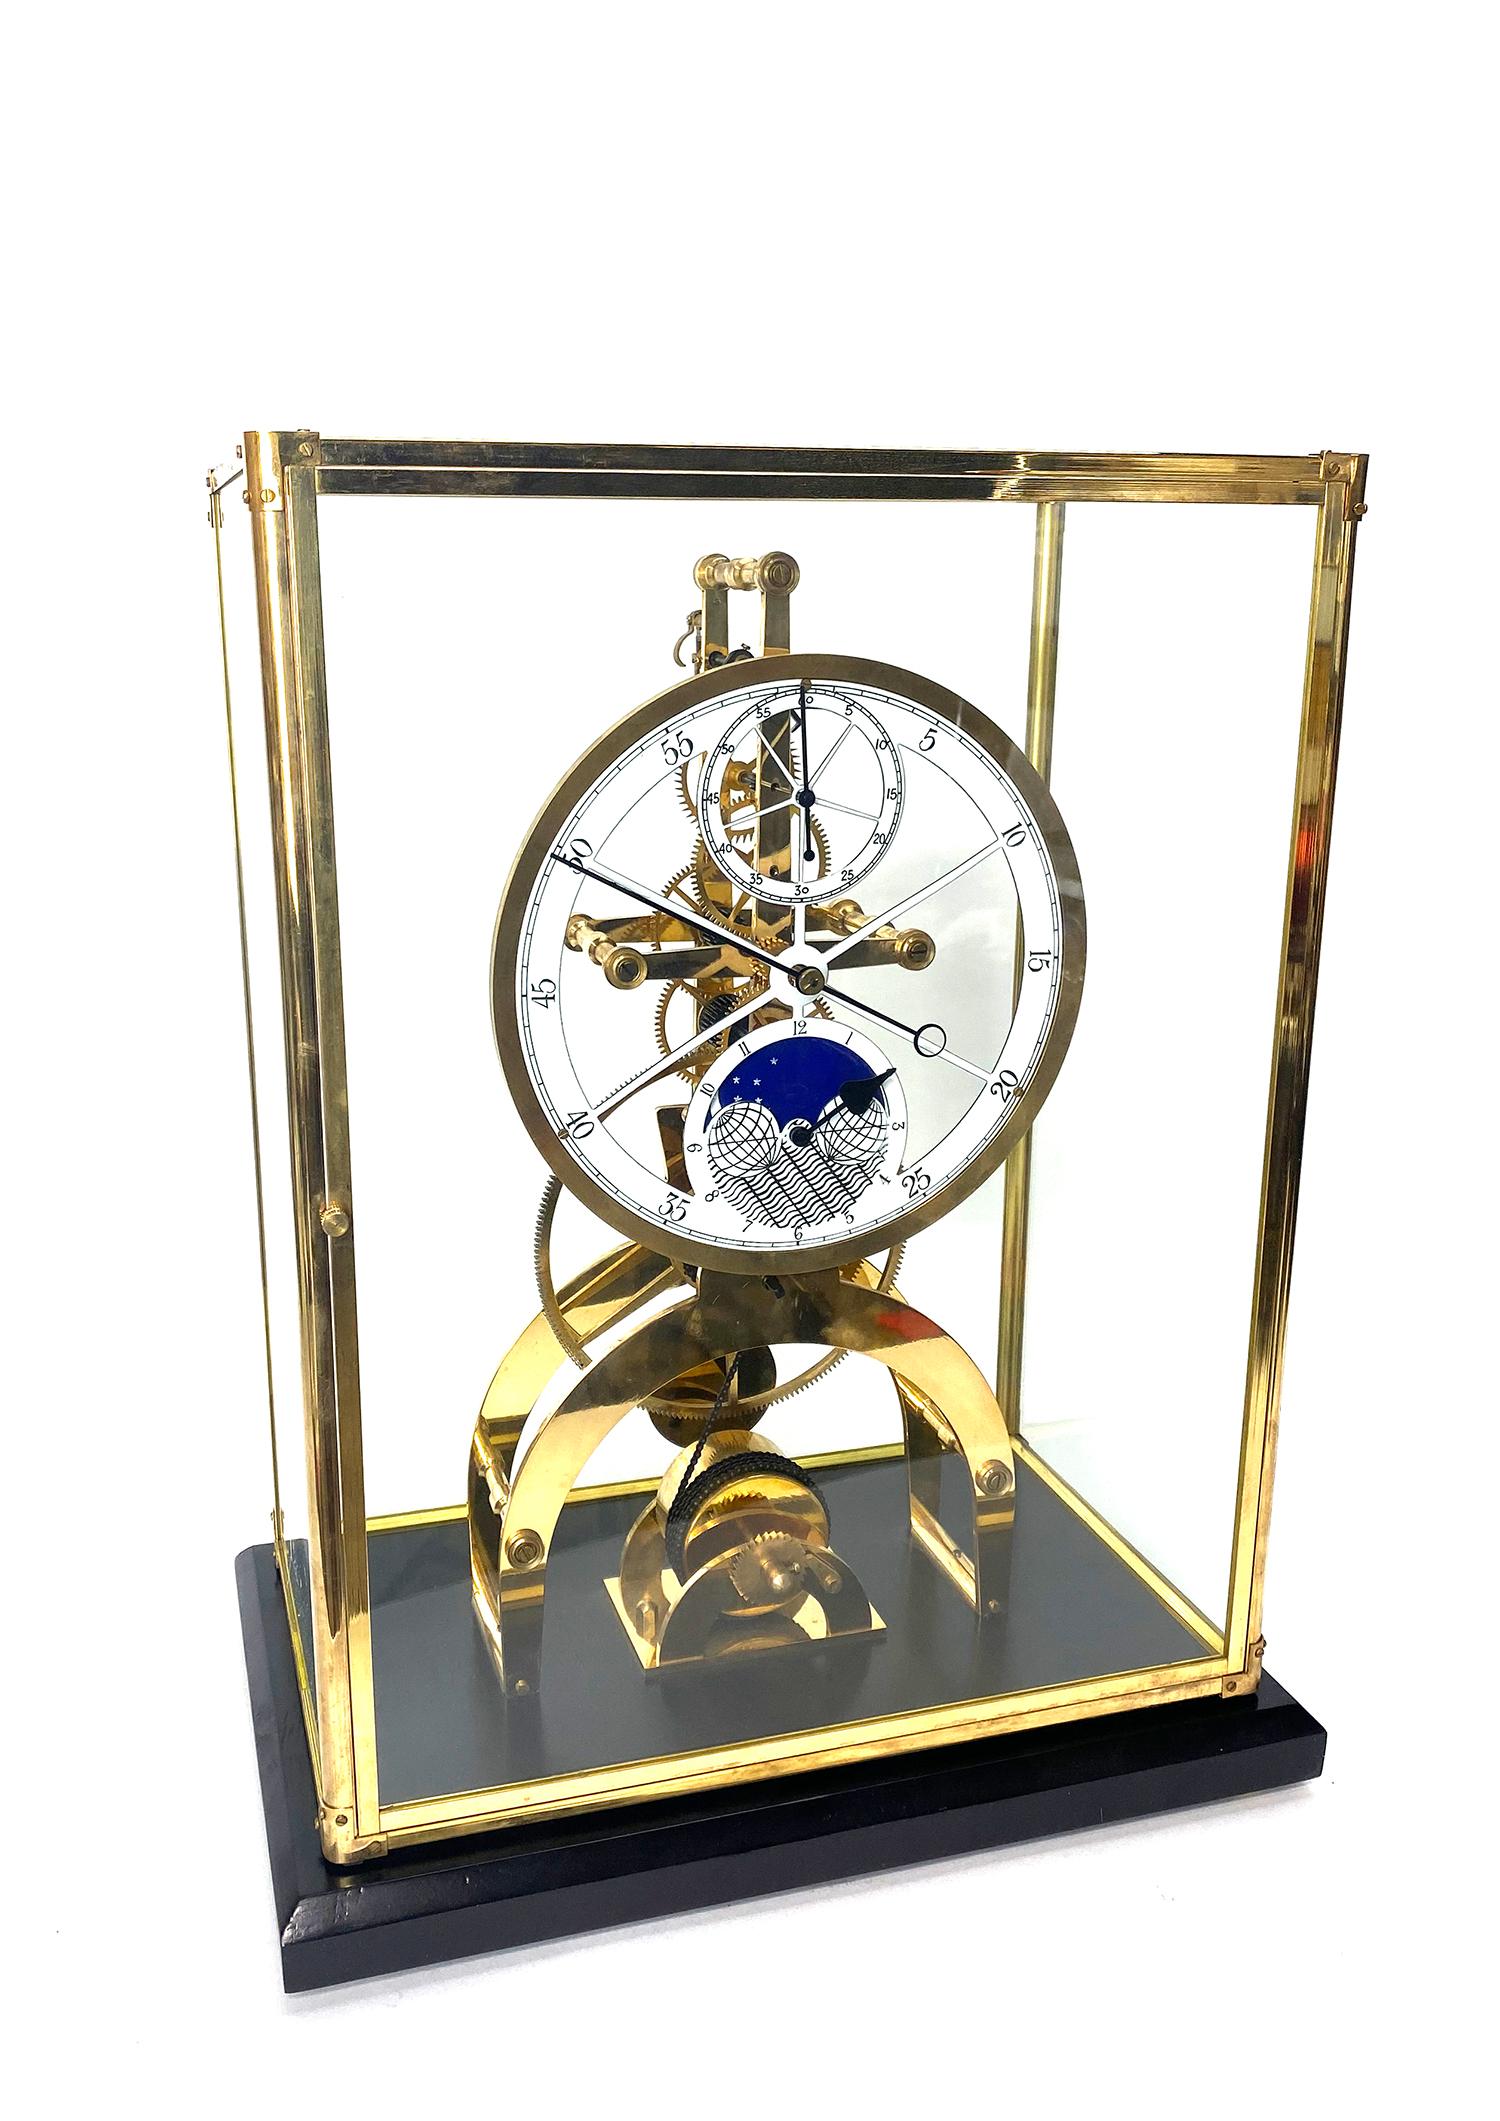 Horloge squelette à cadran de porcelaine astronomique 24K 8 jours à chaîne Fusee avec cadran de lune

Voici une très belle horloge squelette plaquée 24K, logée dans un boîtier en verre avec un cadre en laiton. Il est doté d'une porte à ouverture